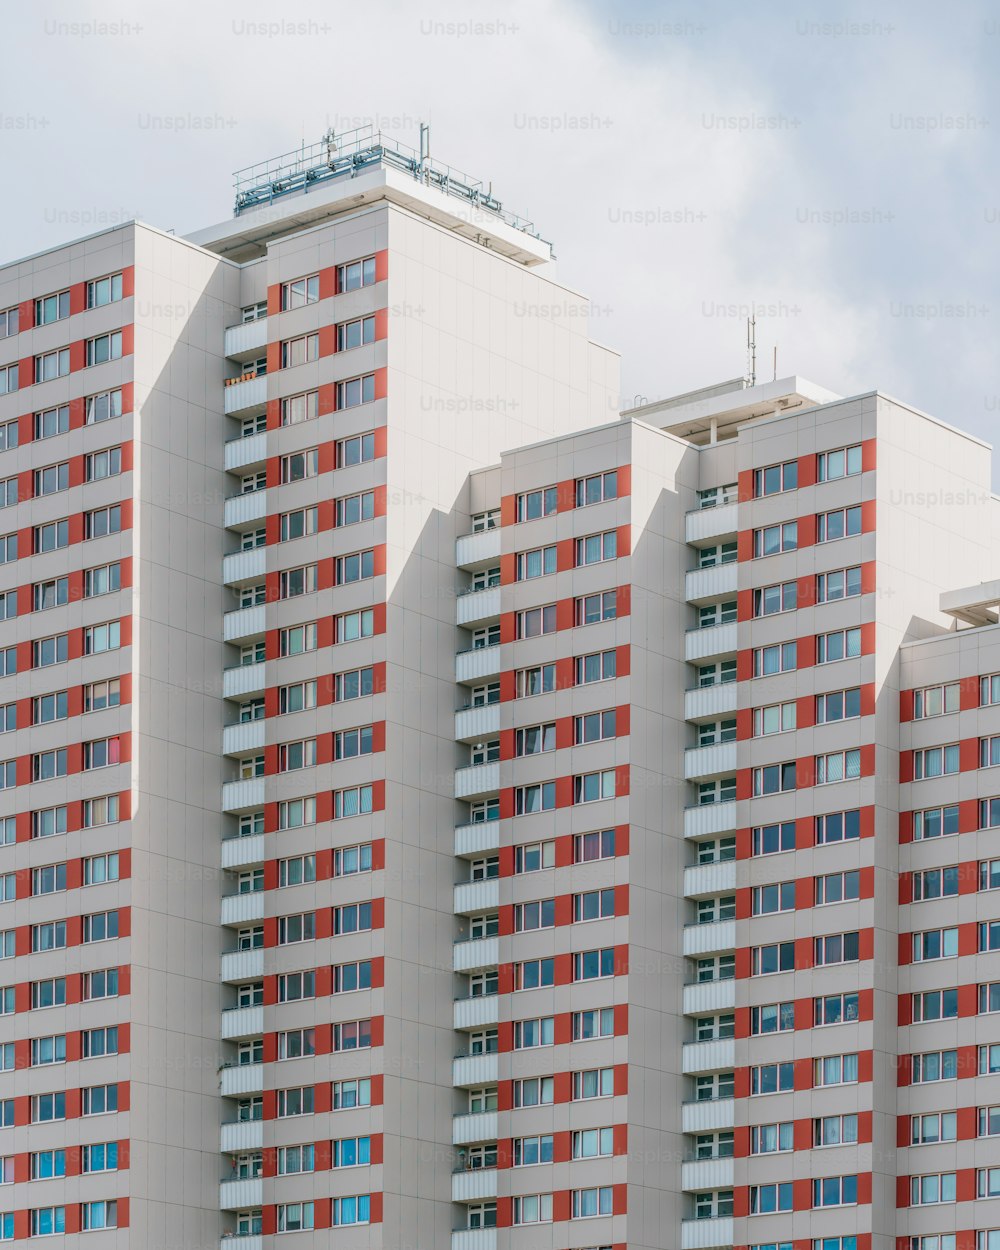 Un edificio alto y blanco con ventanas rojas y azules